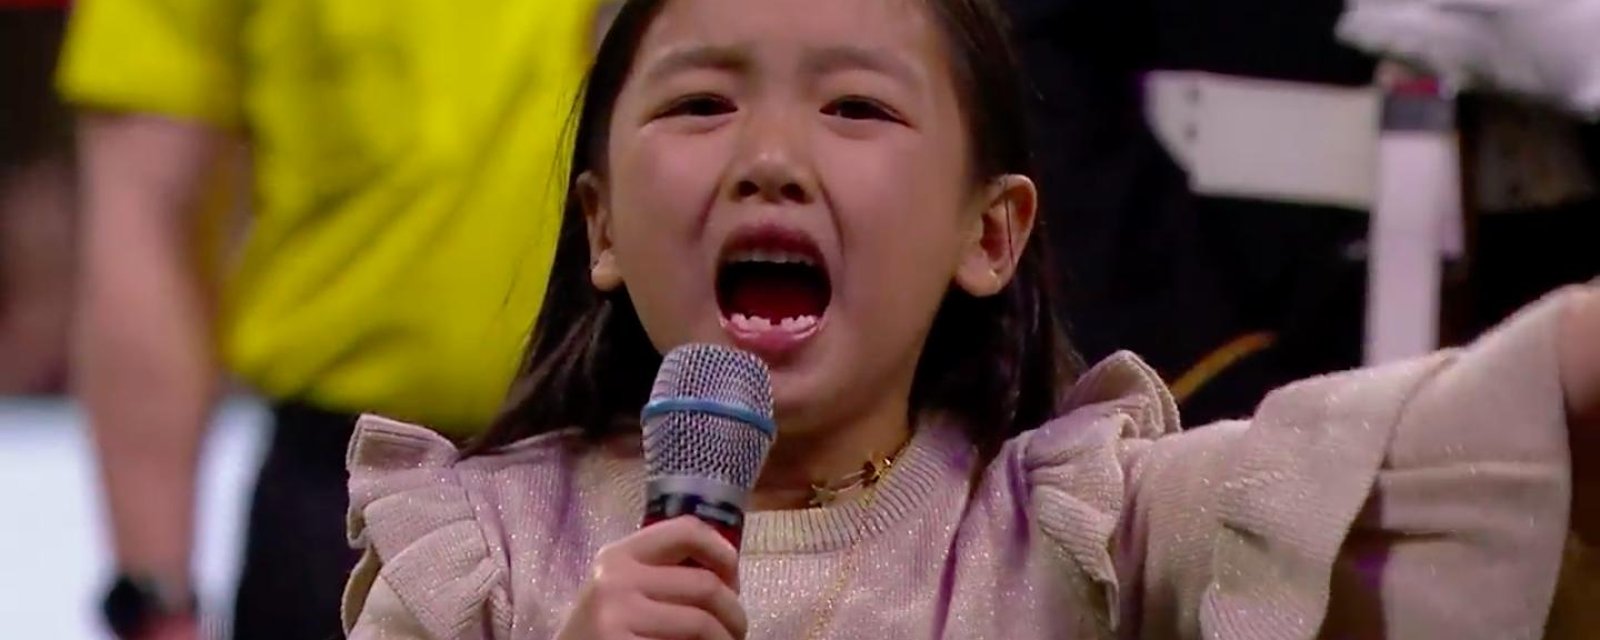 Une petite fille de 7 ans chante l'hymne national devant 73 000 personnes et vous n'en croirez pas vos yeux